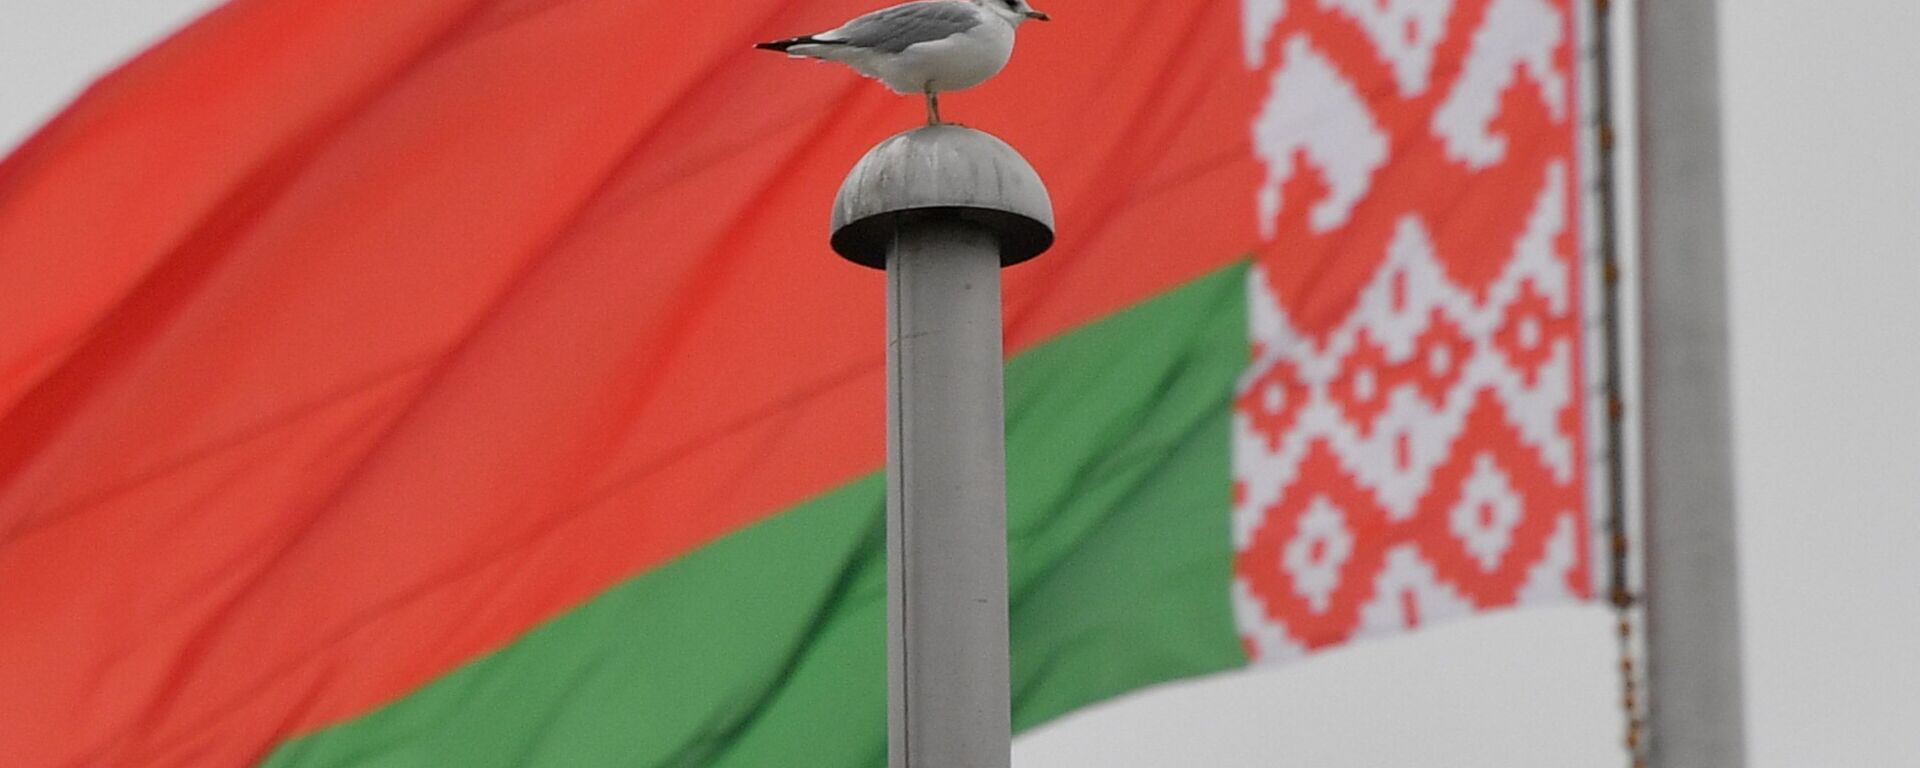 Флаг Беларуси, архивное фото - Sputnik Узбекистан, 1920, 13.11.2021